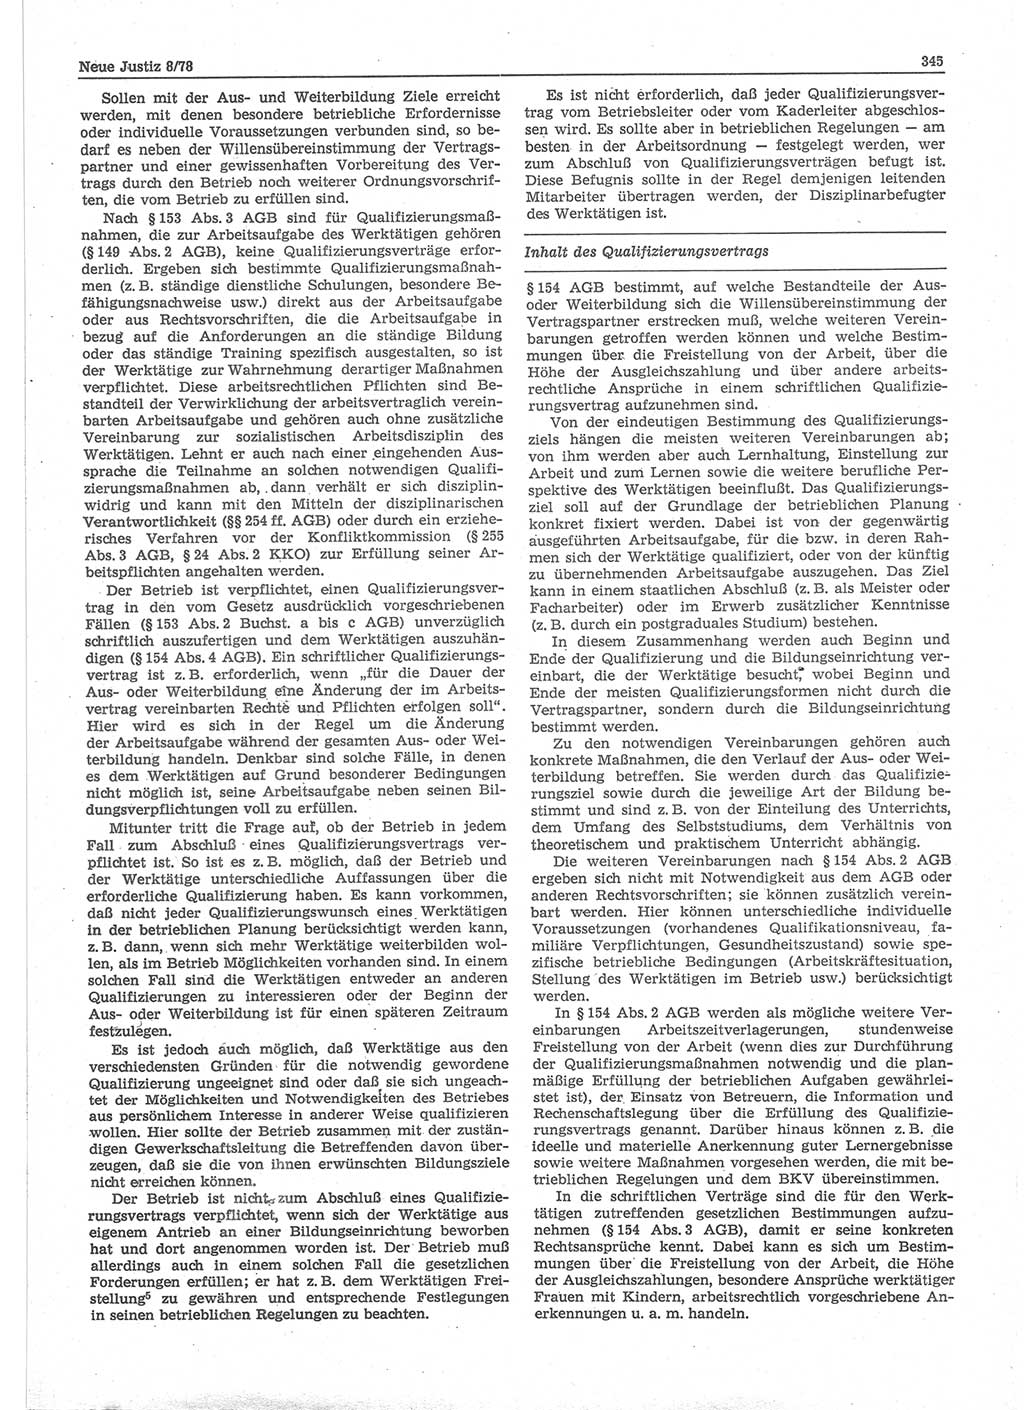 Neue Justiz (NJ), Zeitschrift für sozialistisches Recht und Gesetzlichkeit [Deutsche Demokratische Republik (DDR)], 32. Jahrgang 1978, Seite 345 (NJ DDR 1978, S. 345)